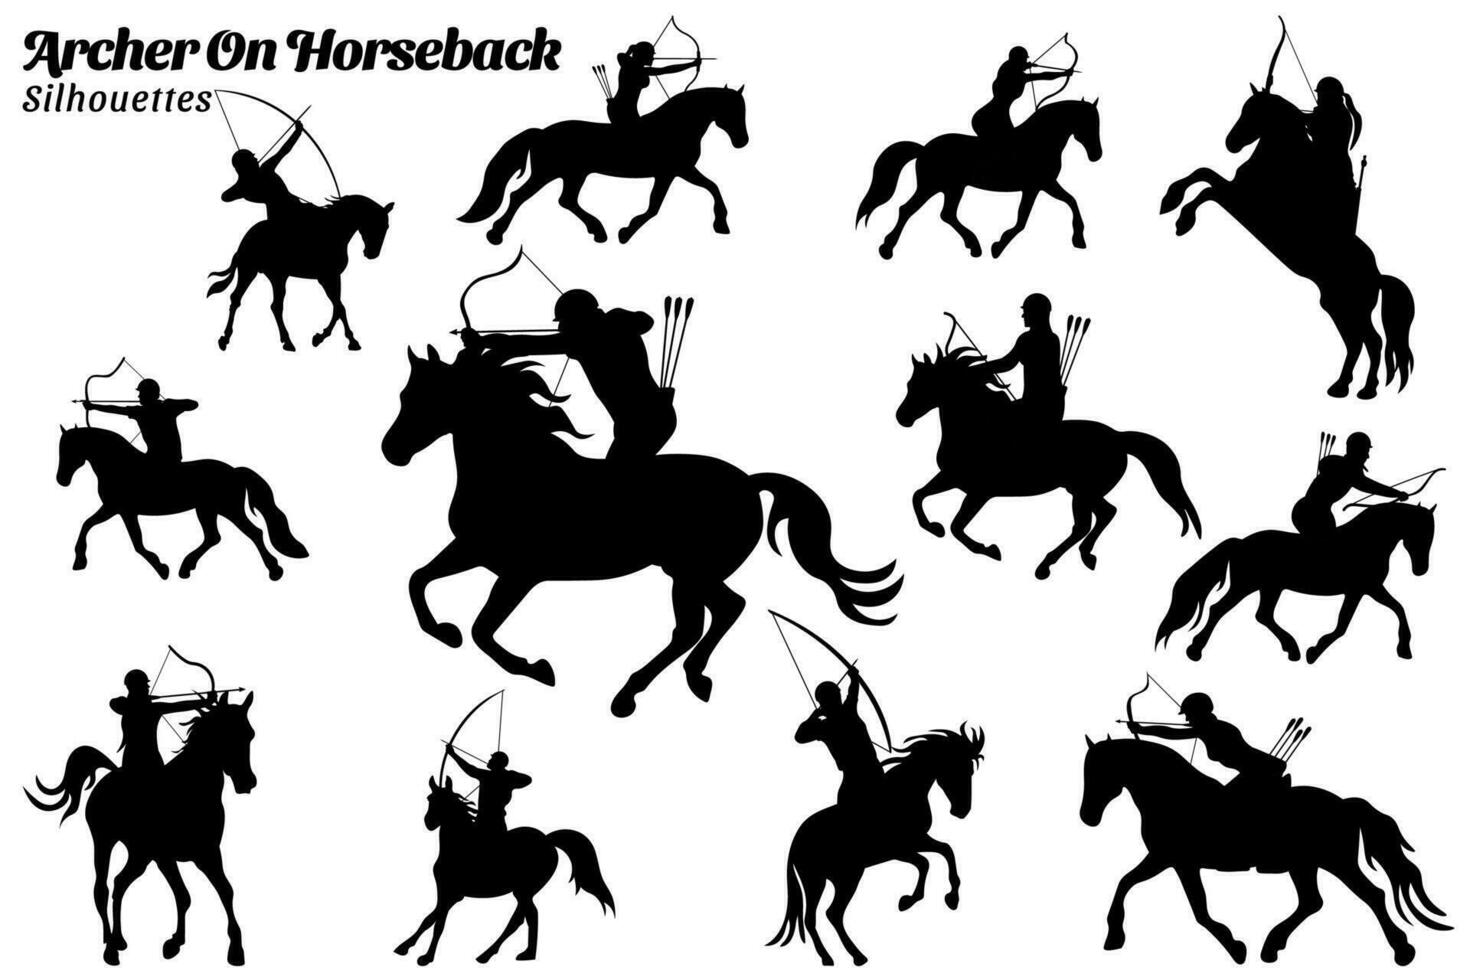 collezione di illustrazioni di sagome di arcieri equitazione cavalli vettore